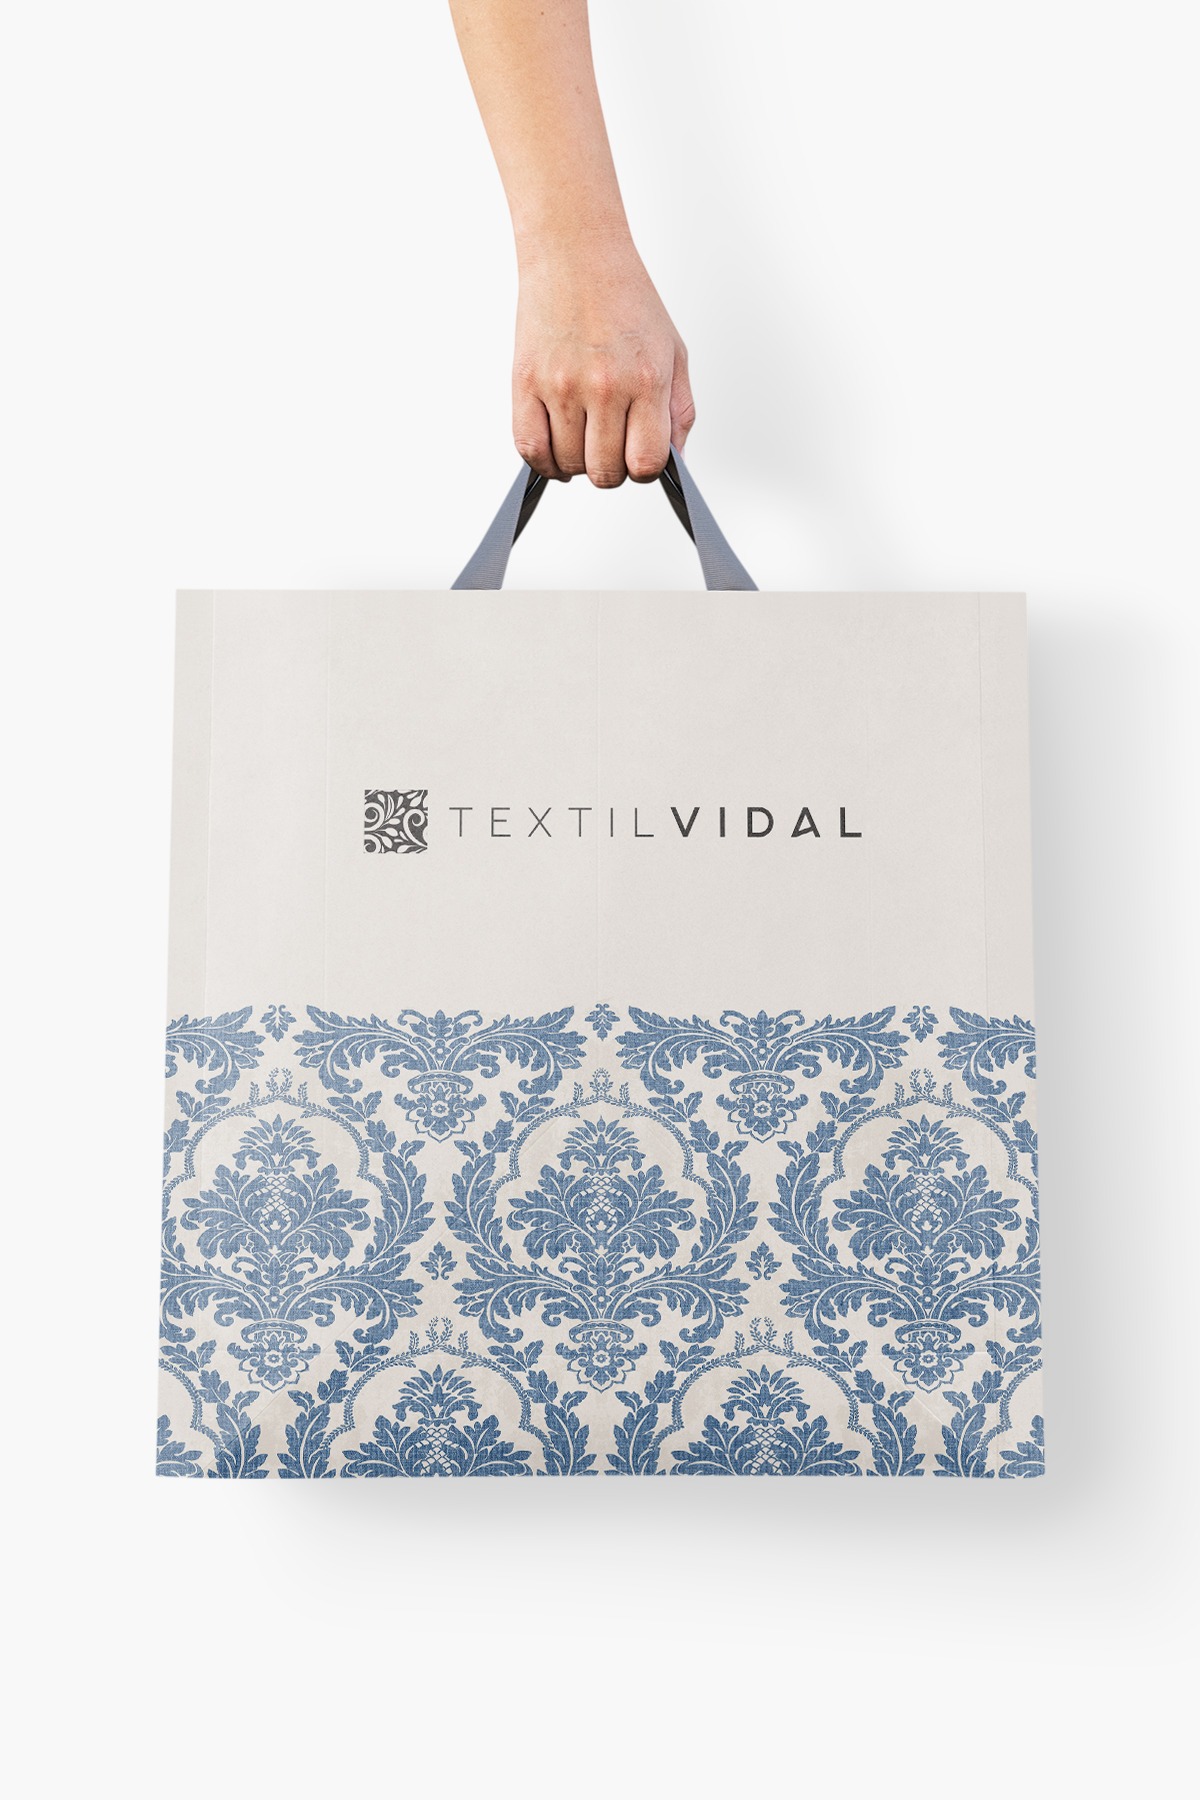 Diseño de bolsa Textil Vidal